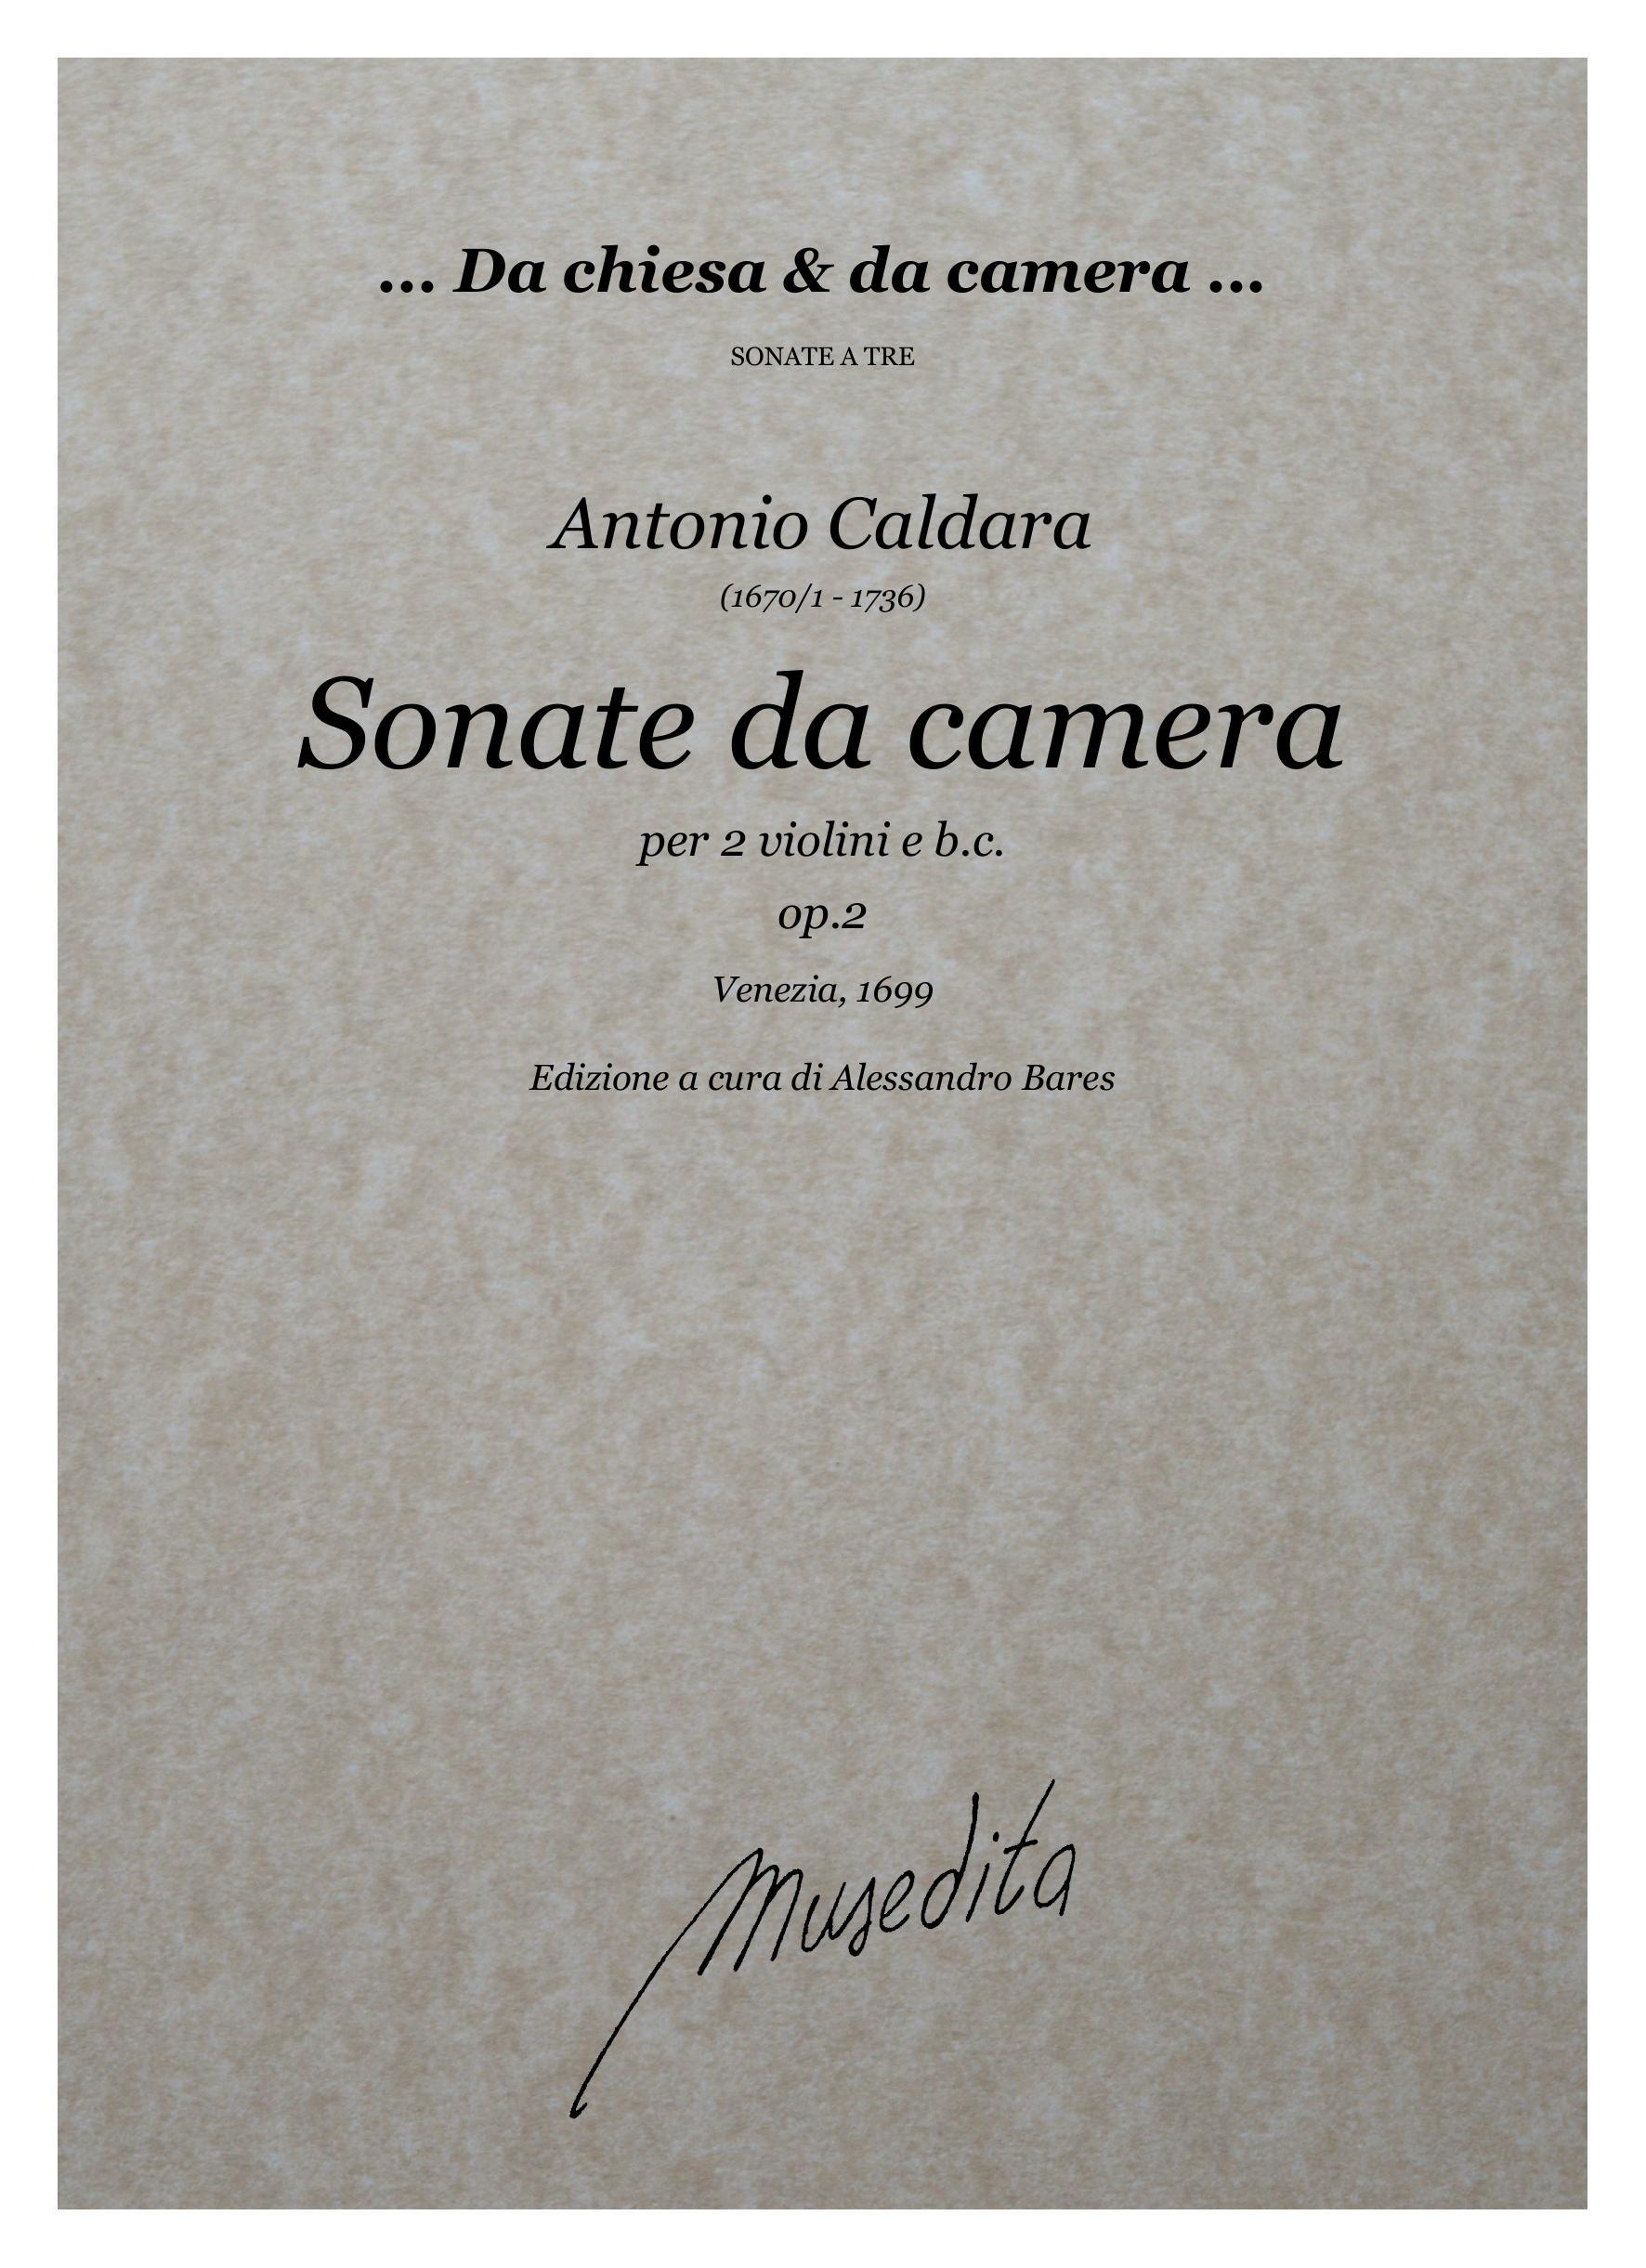 A.Caldara: Sonate da camera op.2 (Venezia, 1699)